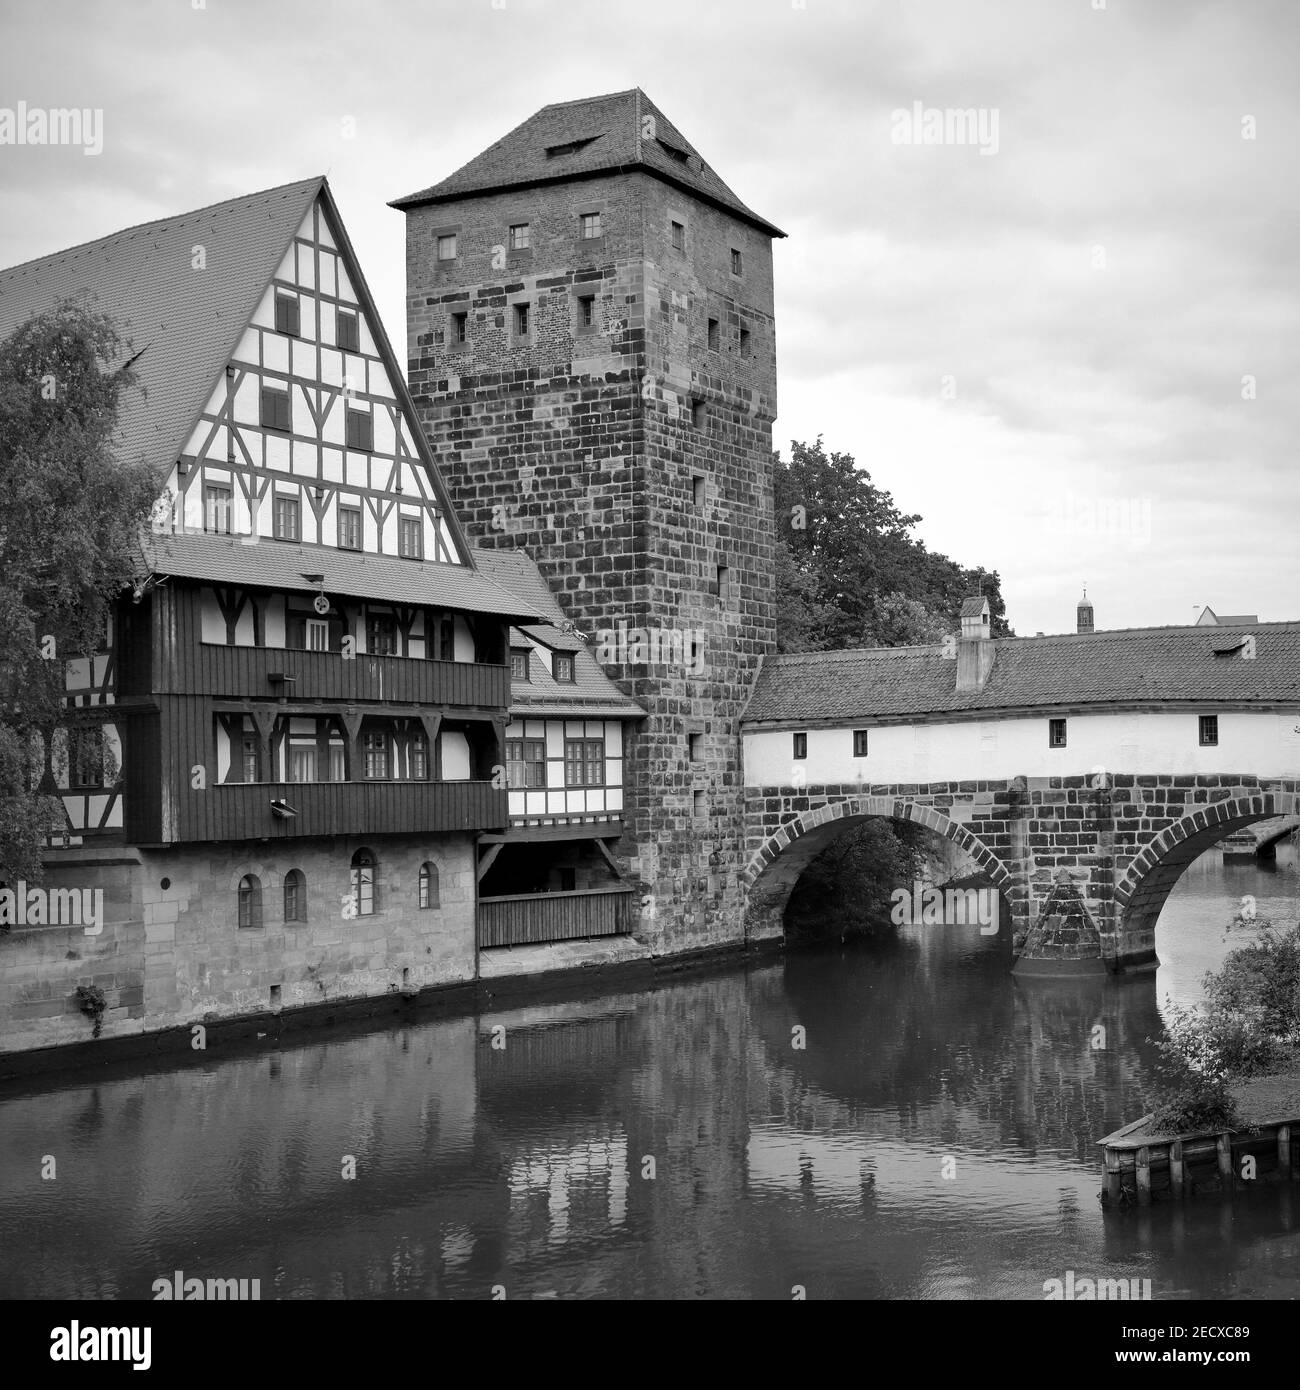 Pont Maxbrucke au-dessus de la rivière Pegnitz à Nuremberg, Allemagne. Photographie en noir et blanc, paysage allemand Banque D'Images